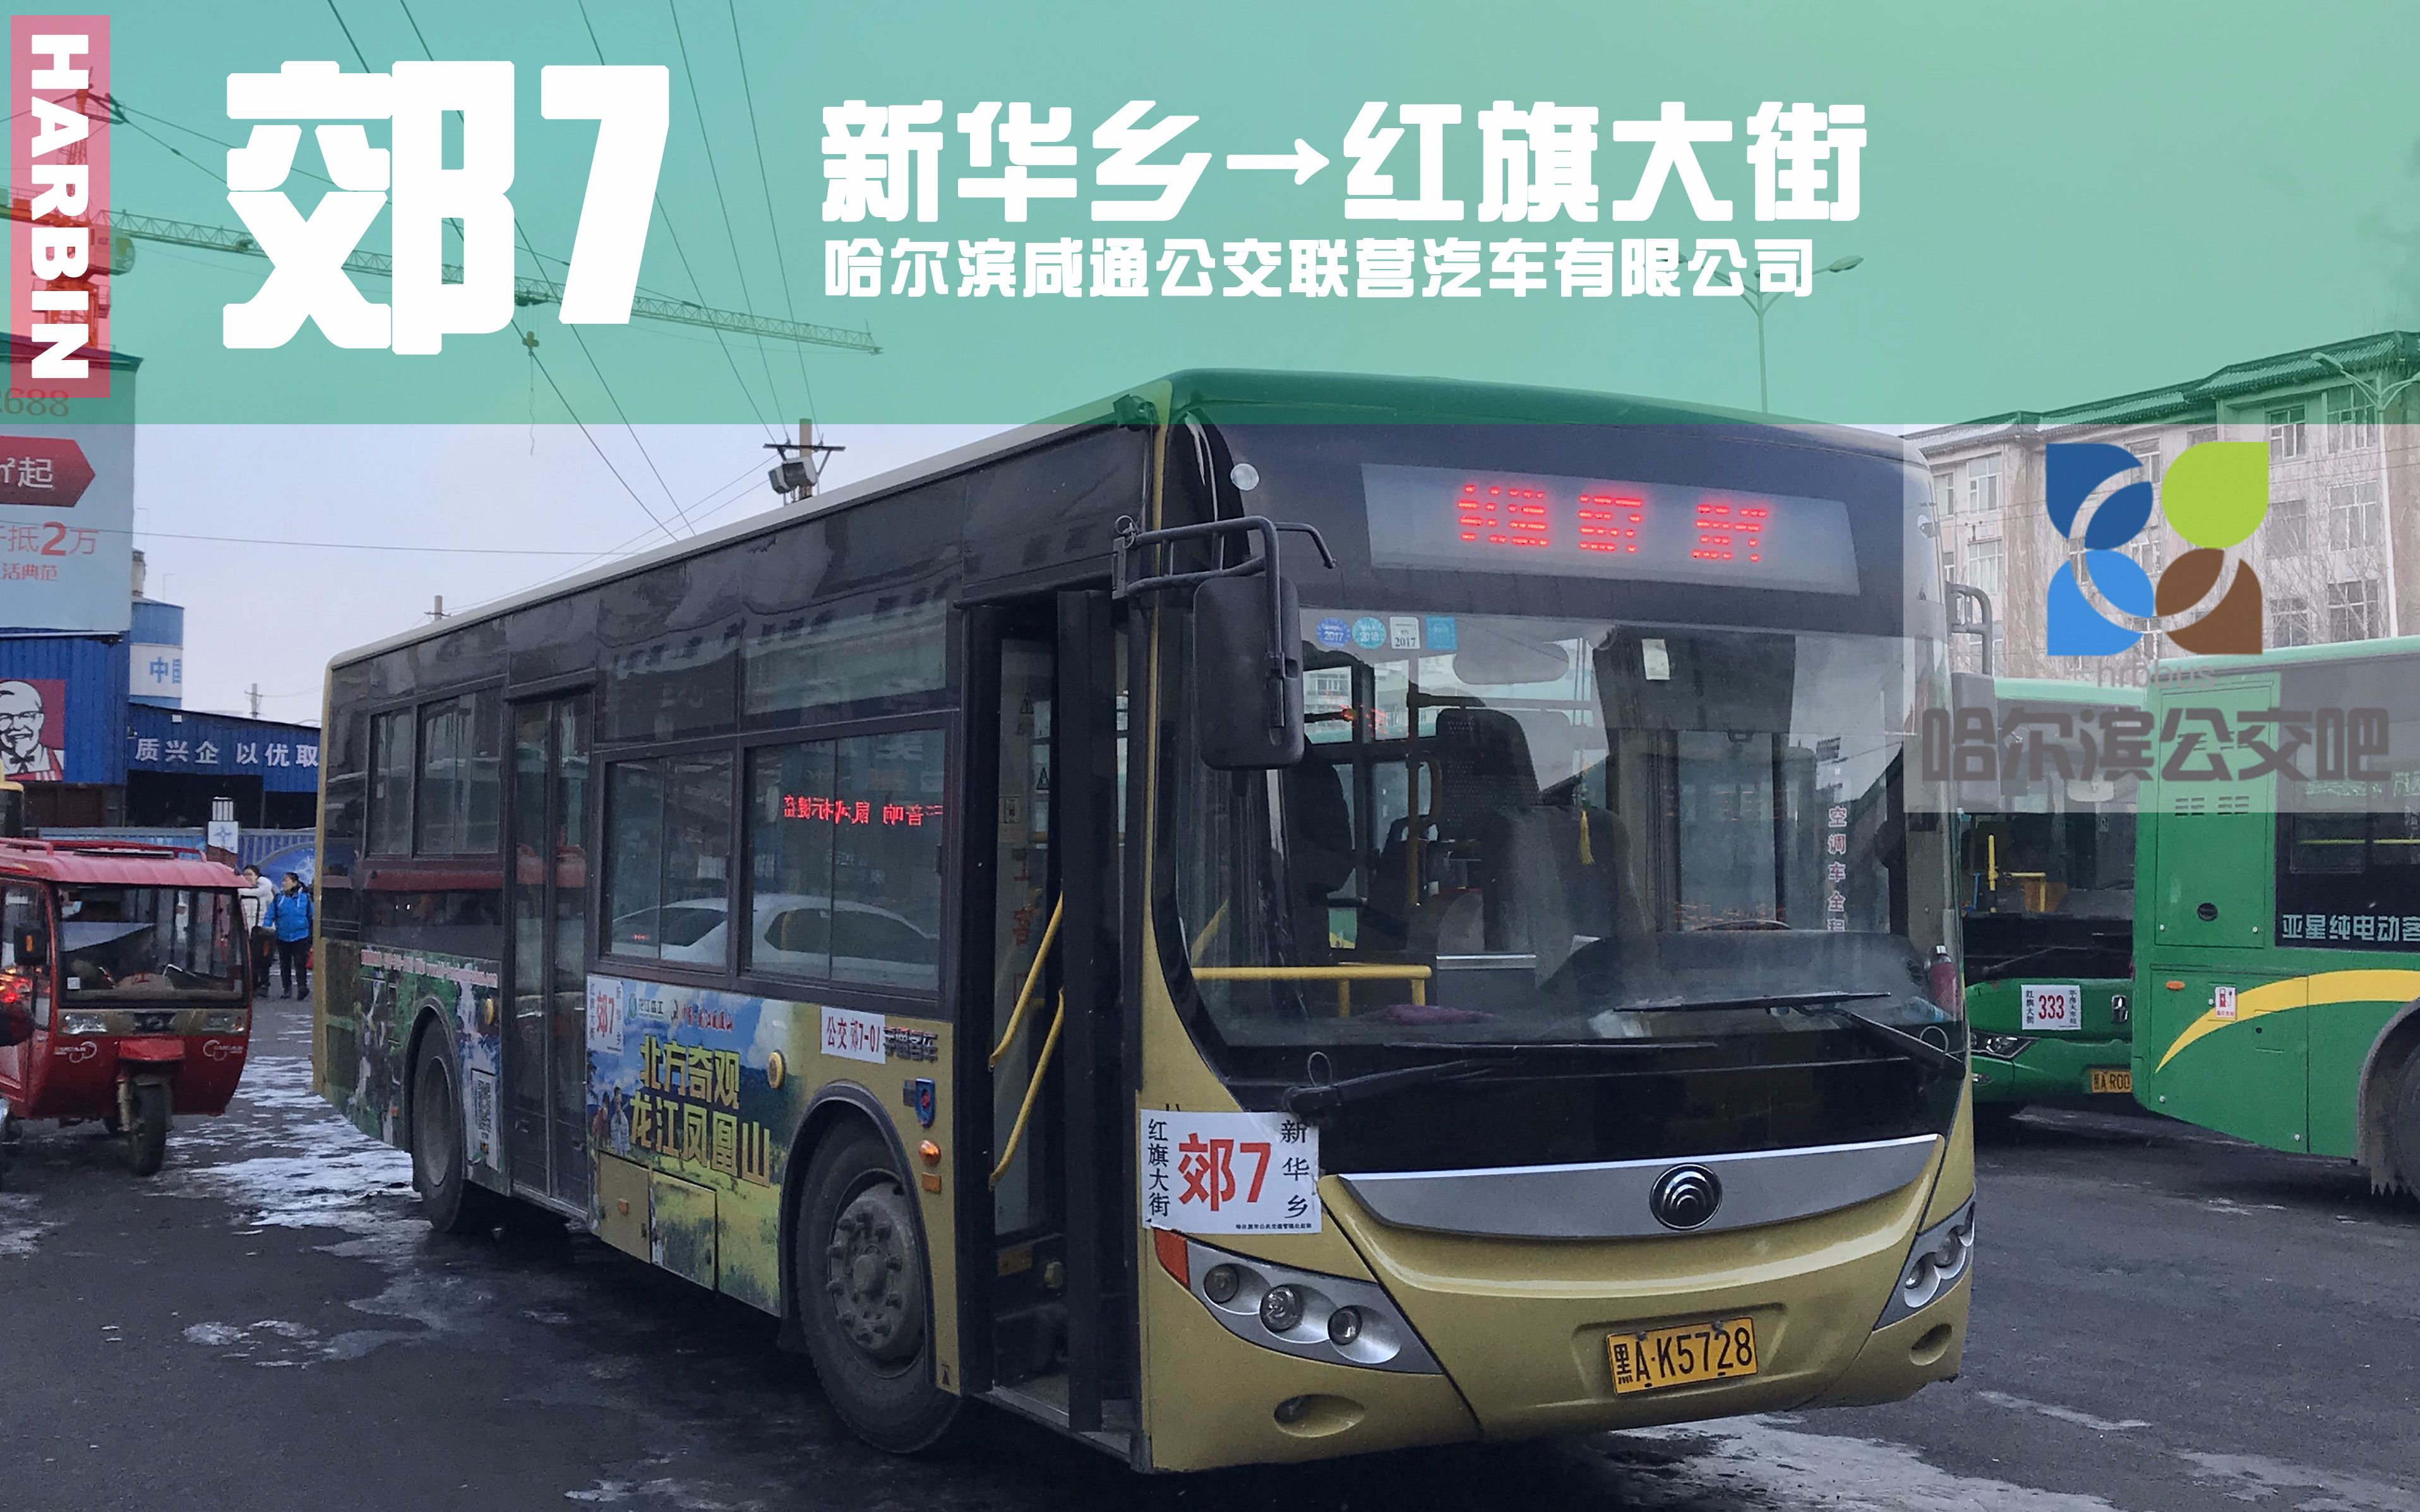 哈尔滨7路公交车图片